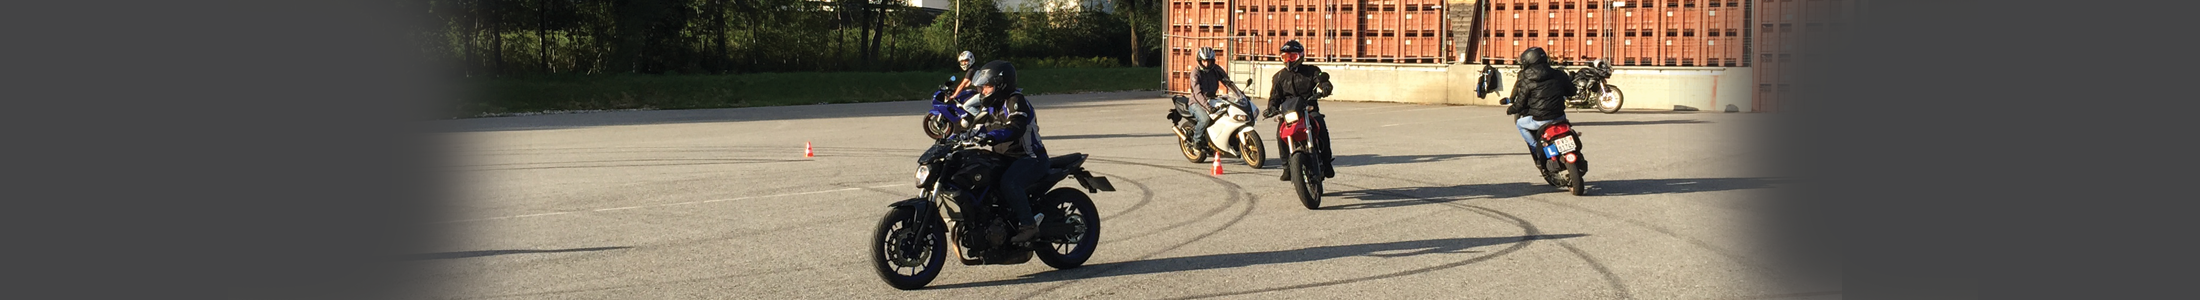 Cours moto école